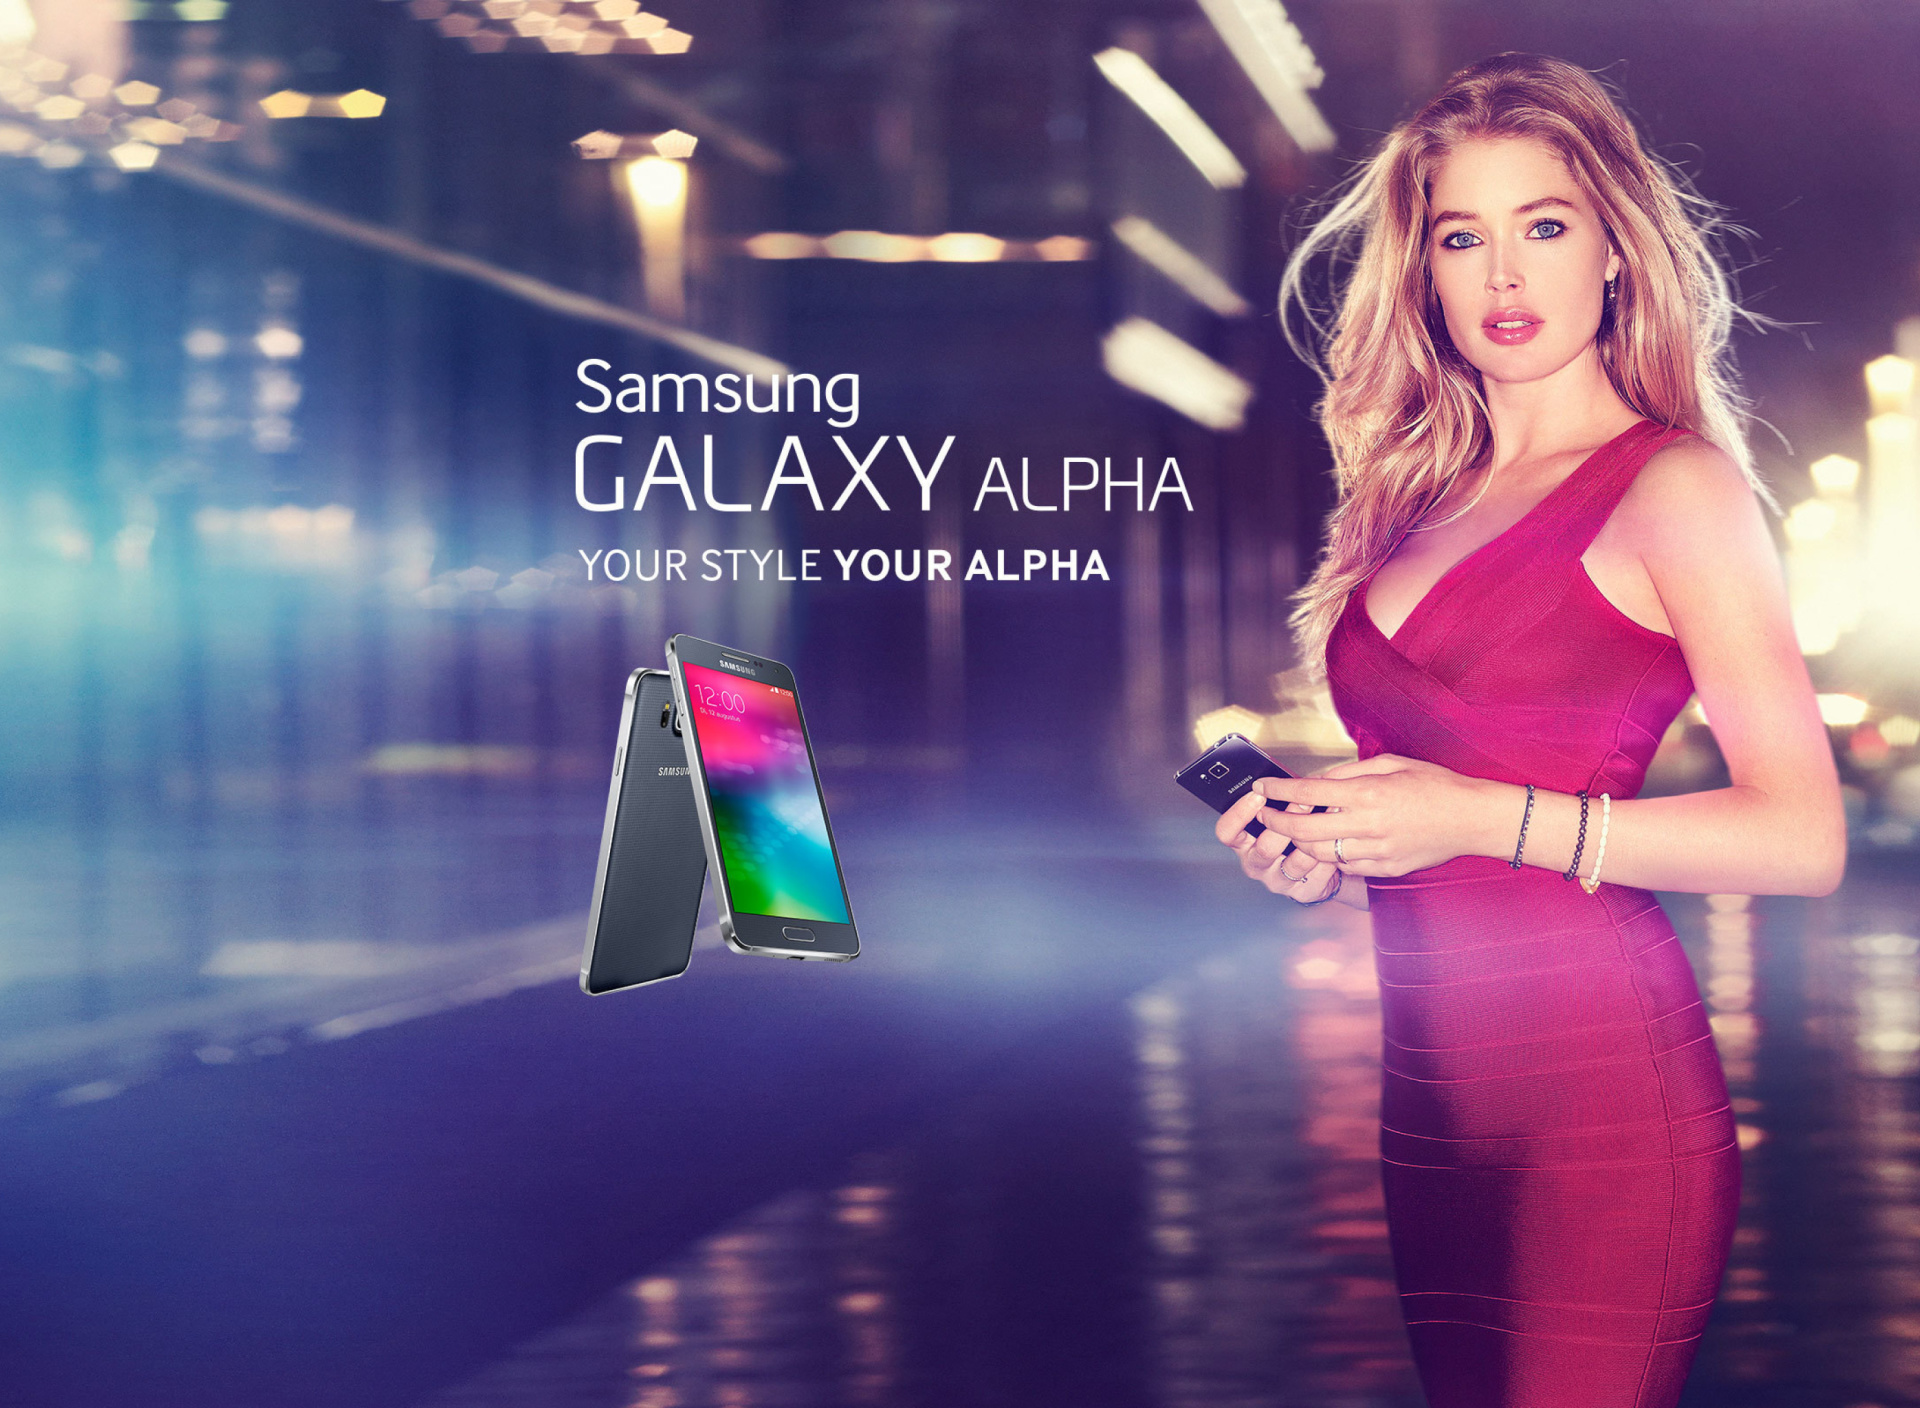 Samsung Galaxy Alpha Advertisement with Doutzen Kroes screenshot #1 1920x1408